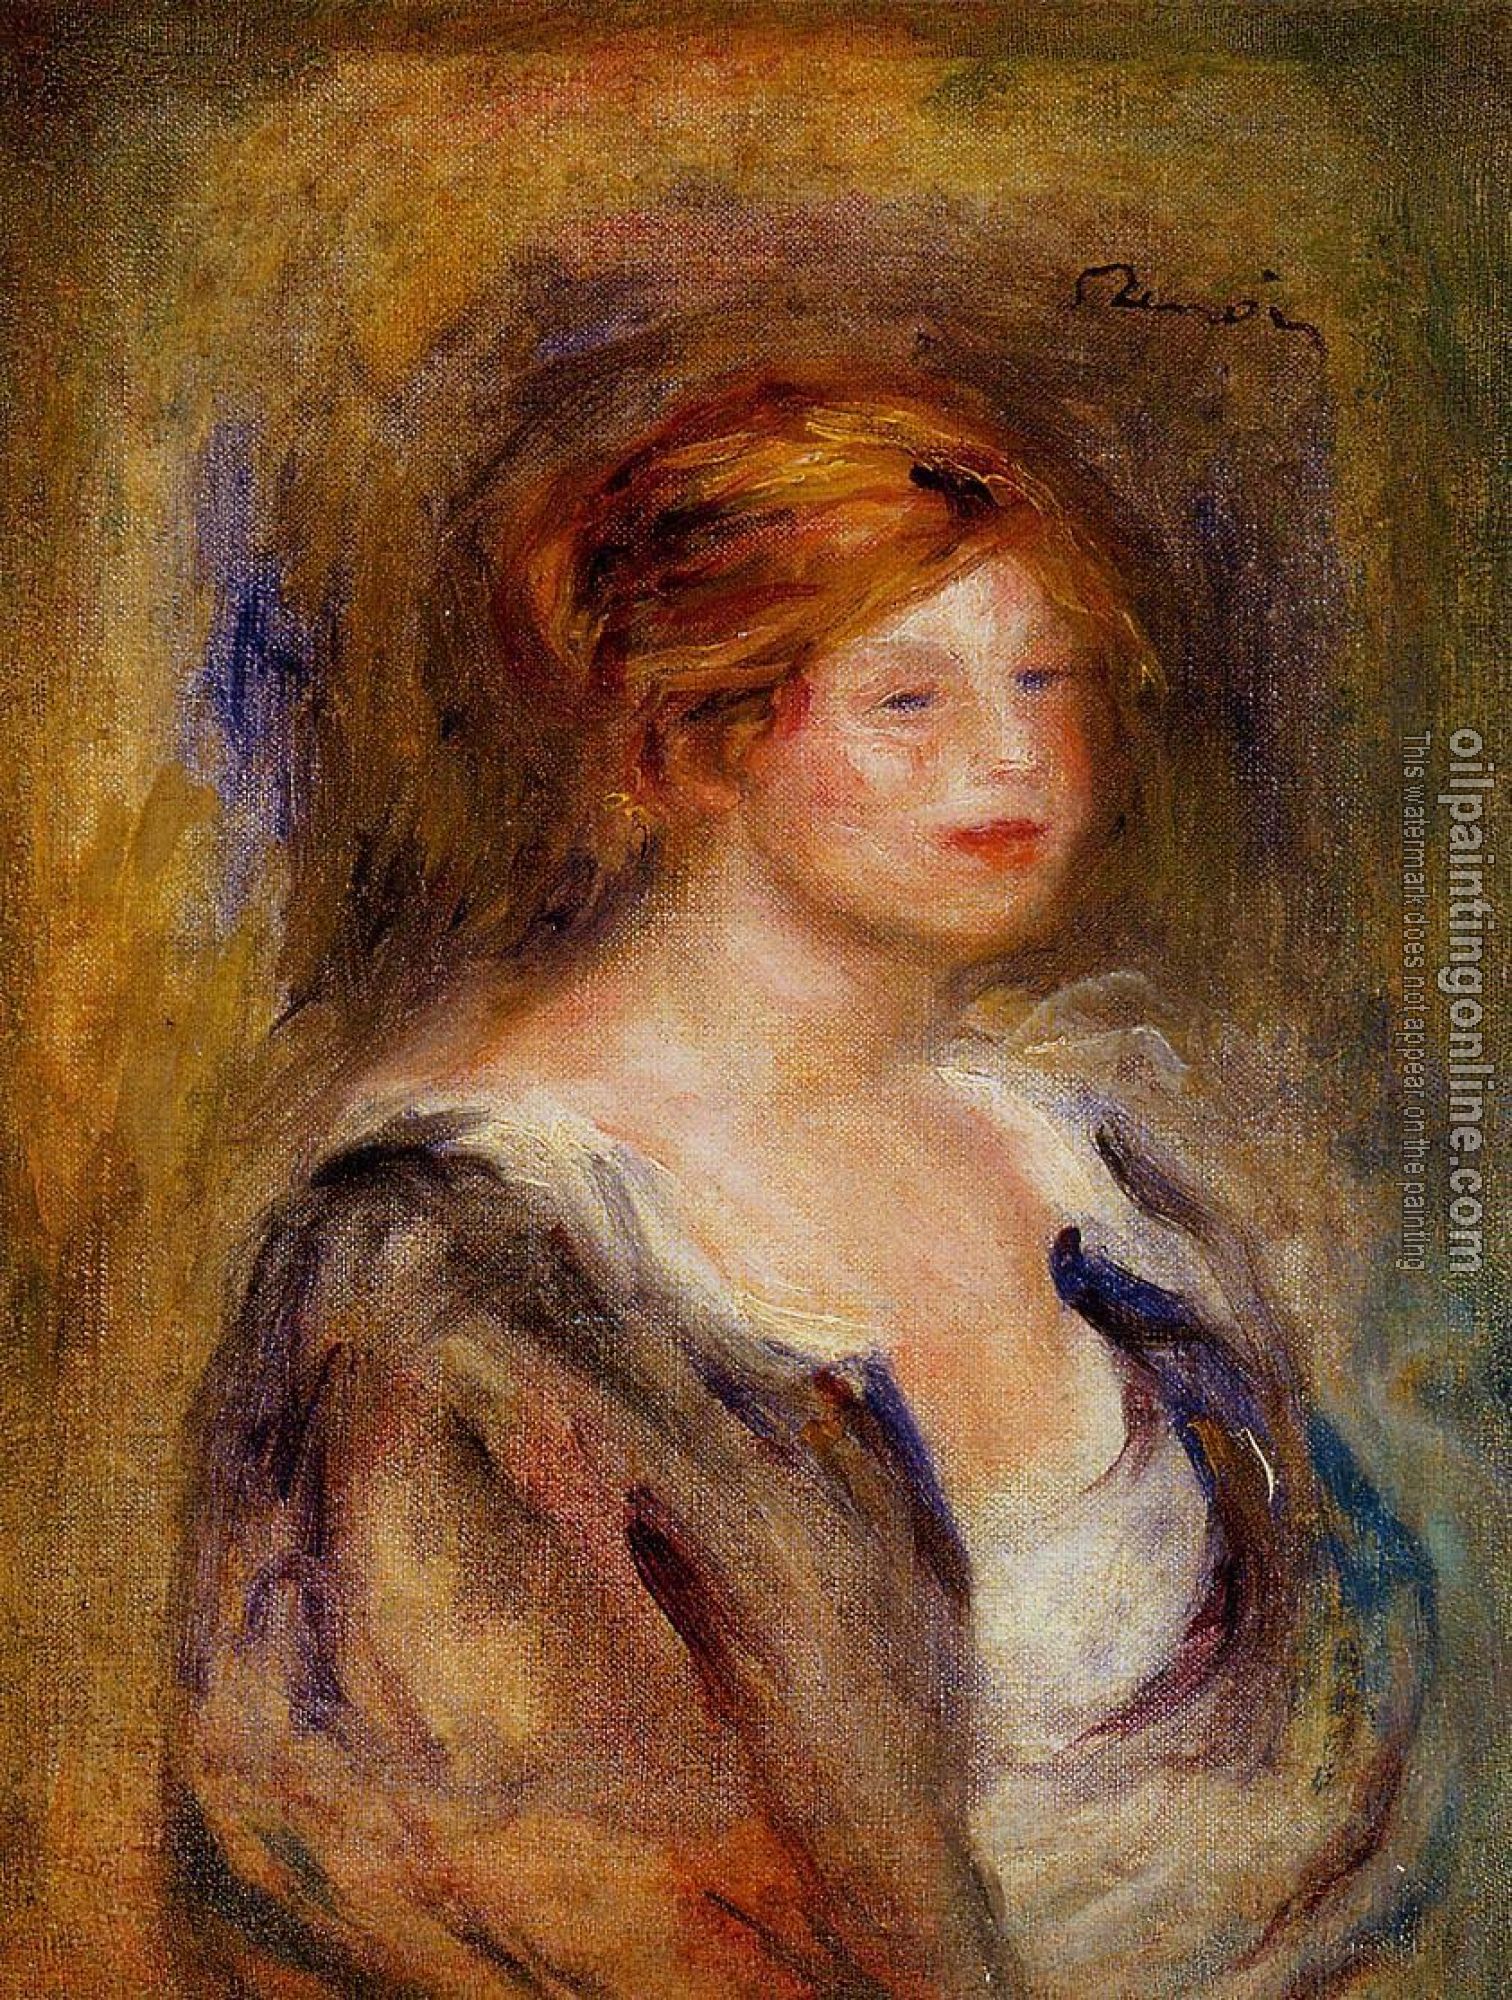 Renoir, Pierre Auguste - Head of a Blond Woman